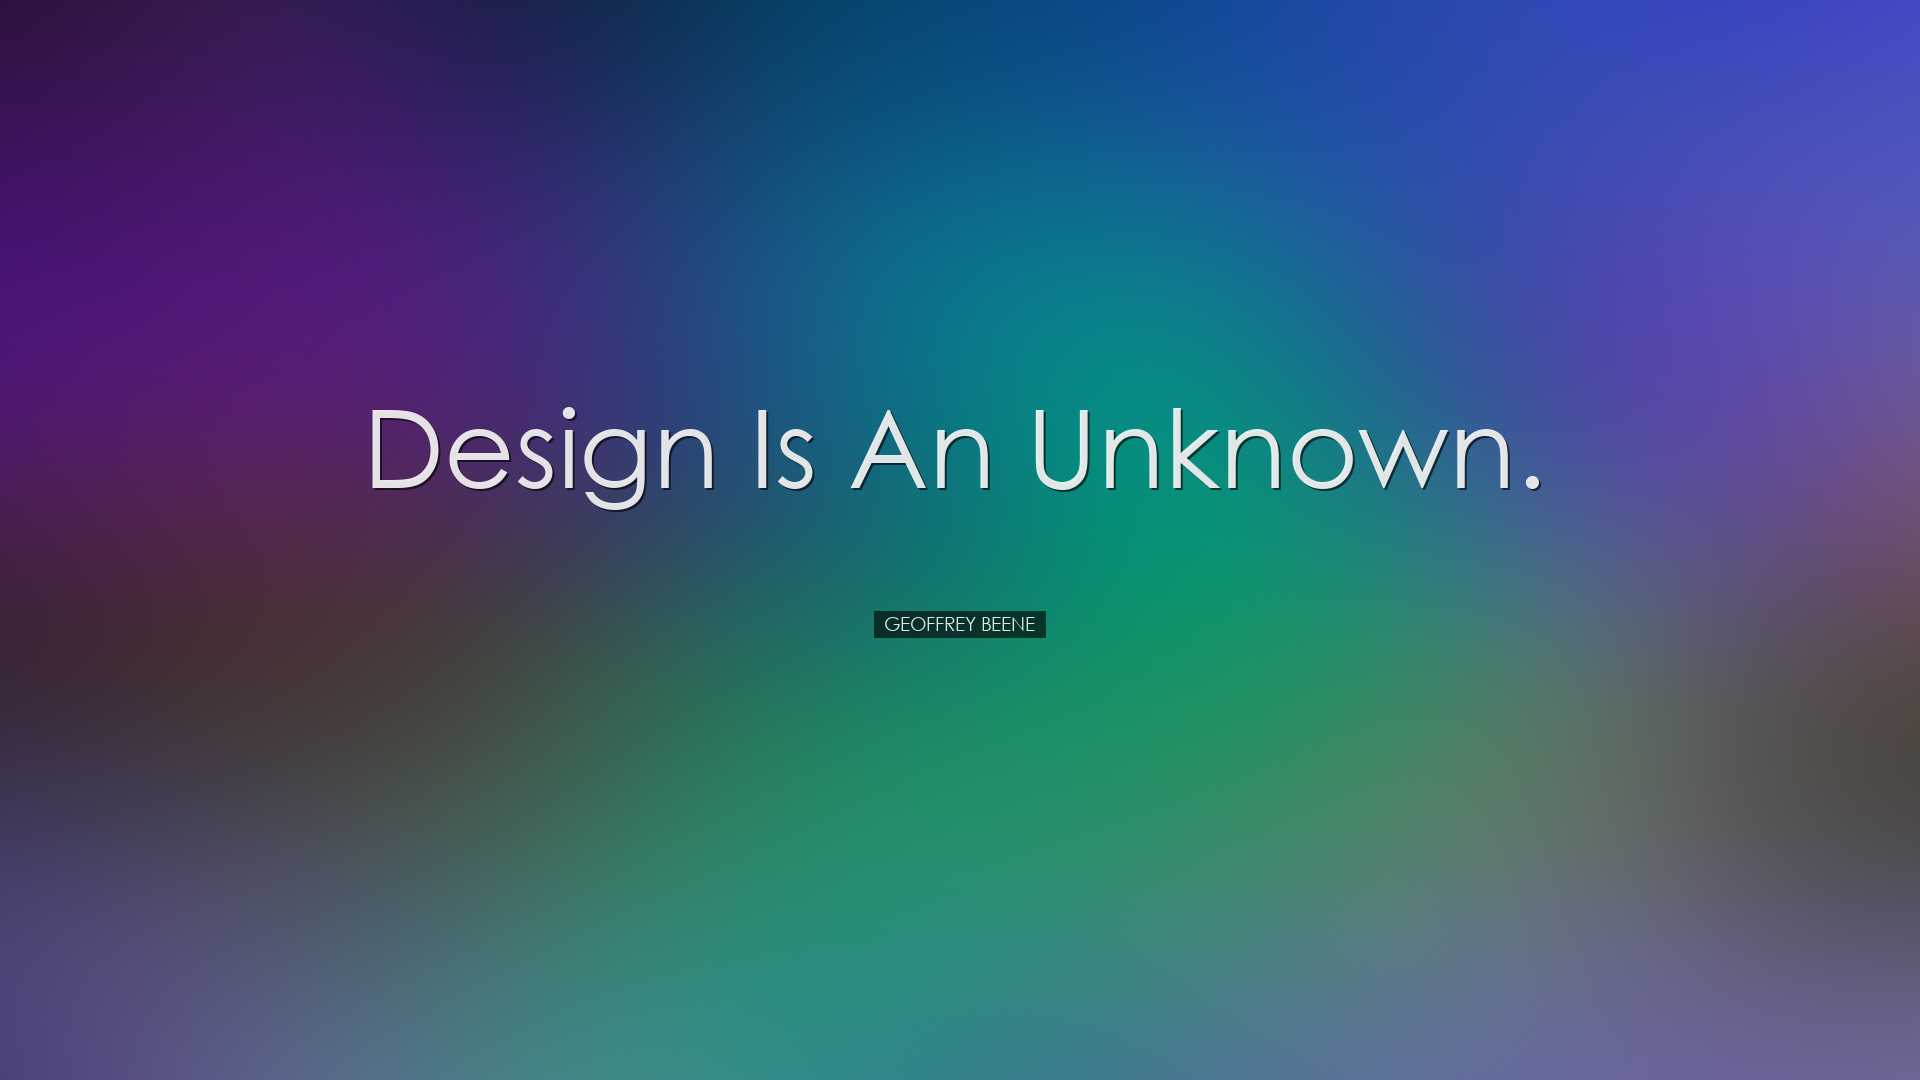 Design is an unknown. - Geoffrey Beene